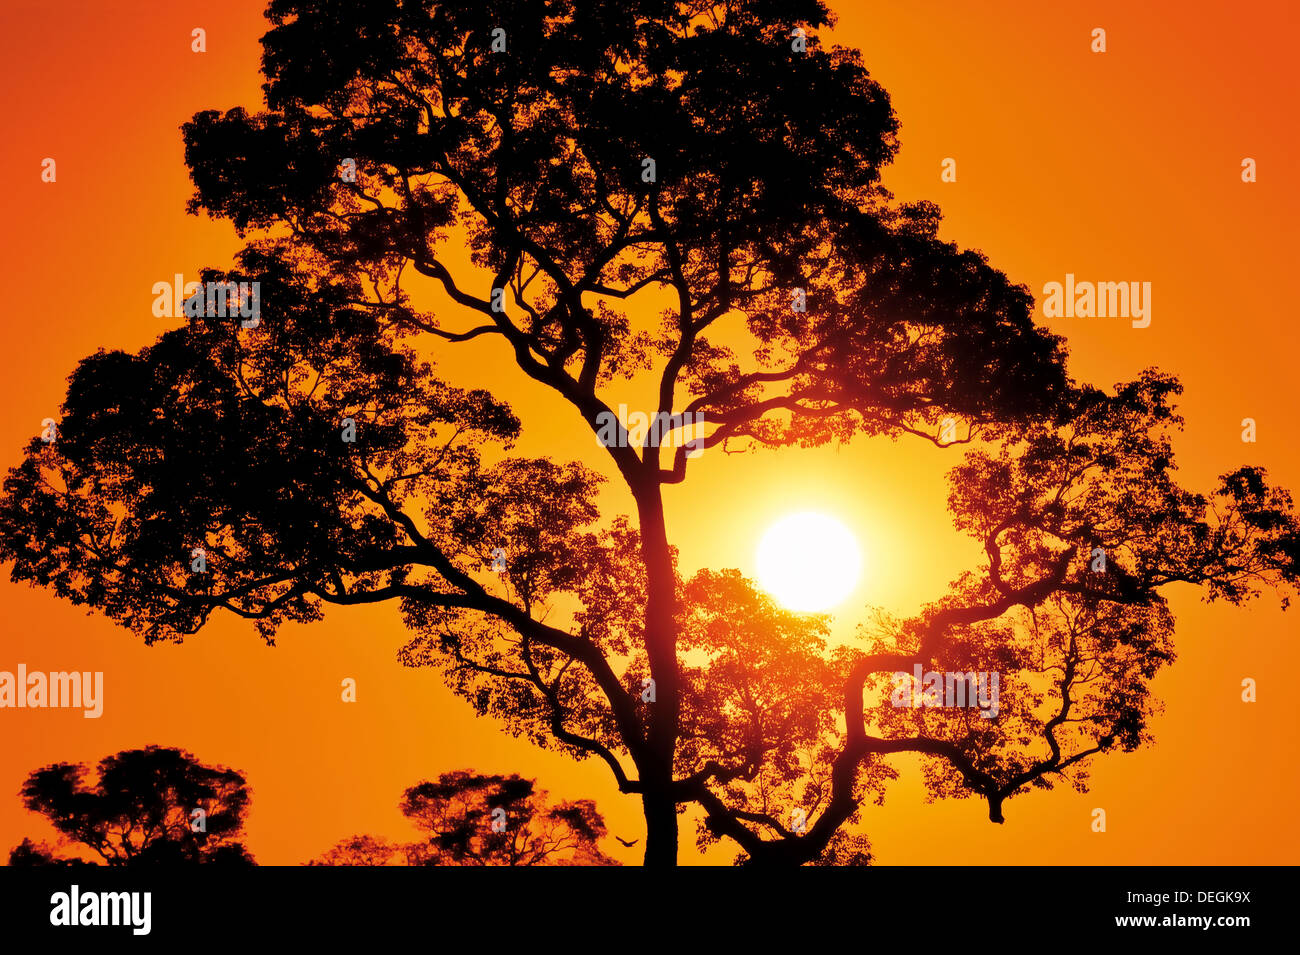 Brasilien, Pantanal: Malerische Sonnenuntergang mit Baum Silhouette und Orange sky Stockfoto